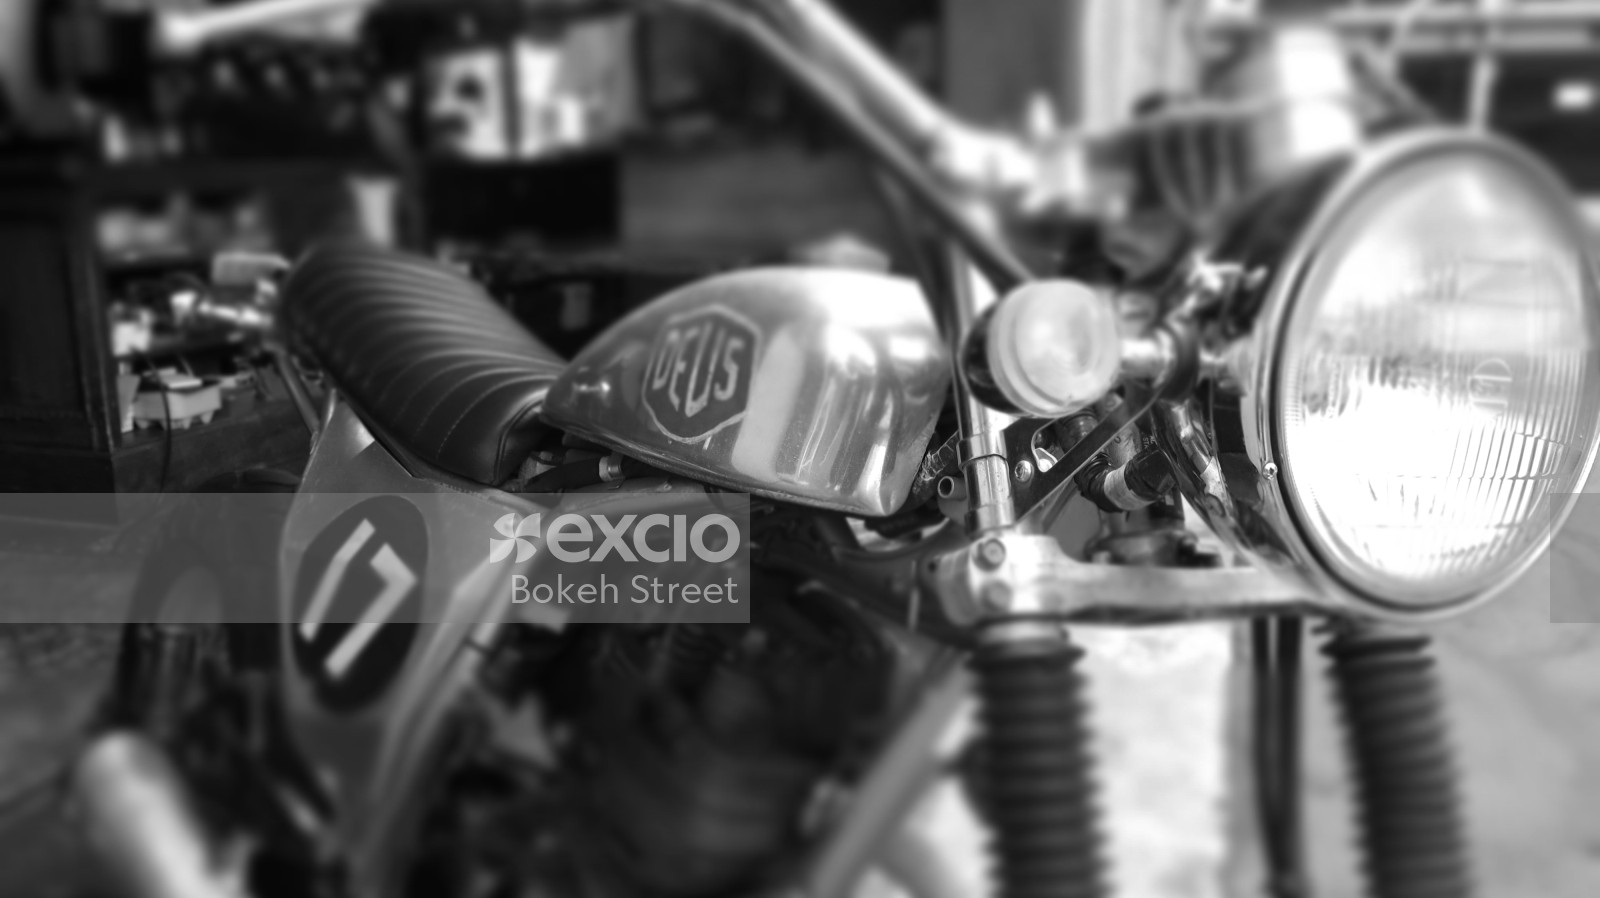 Deus motorcycle monochrome